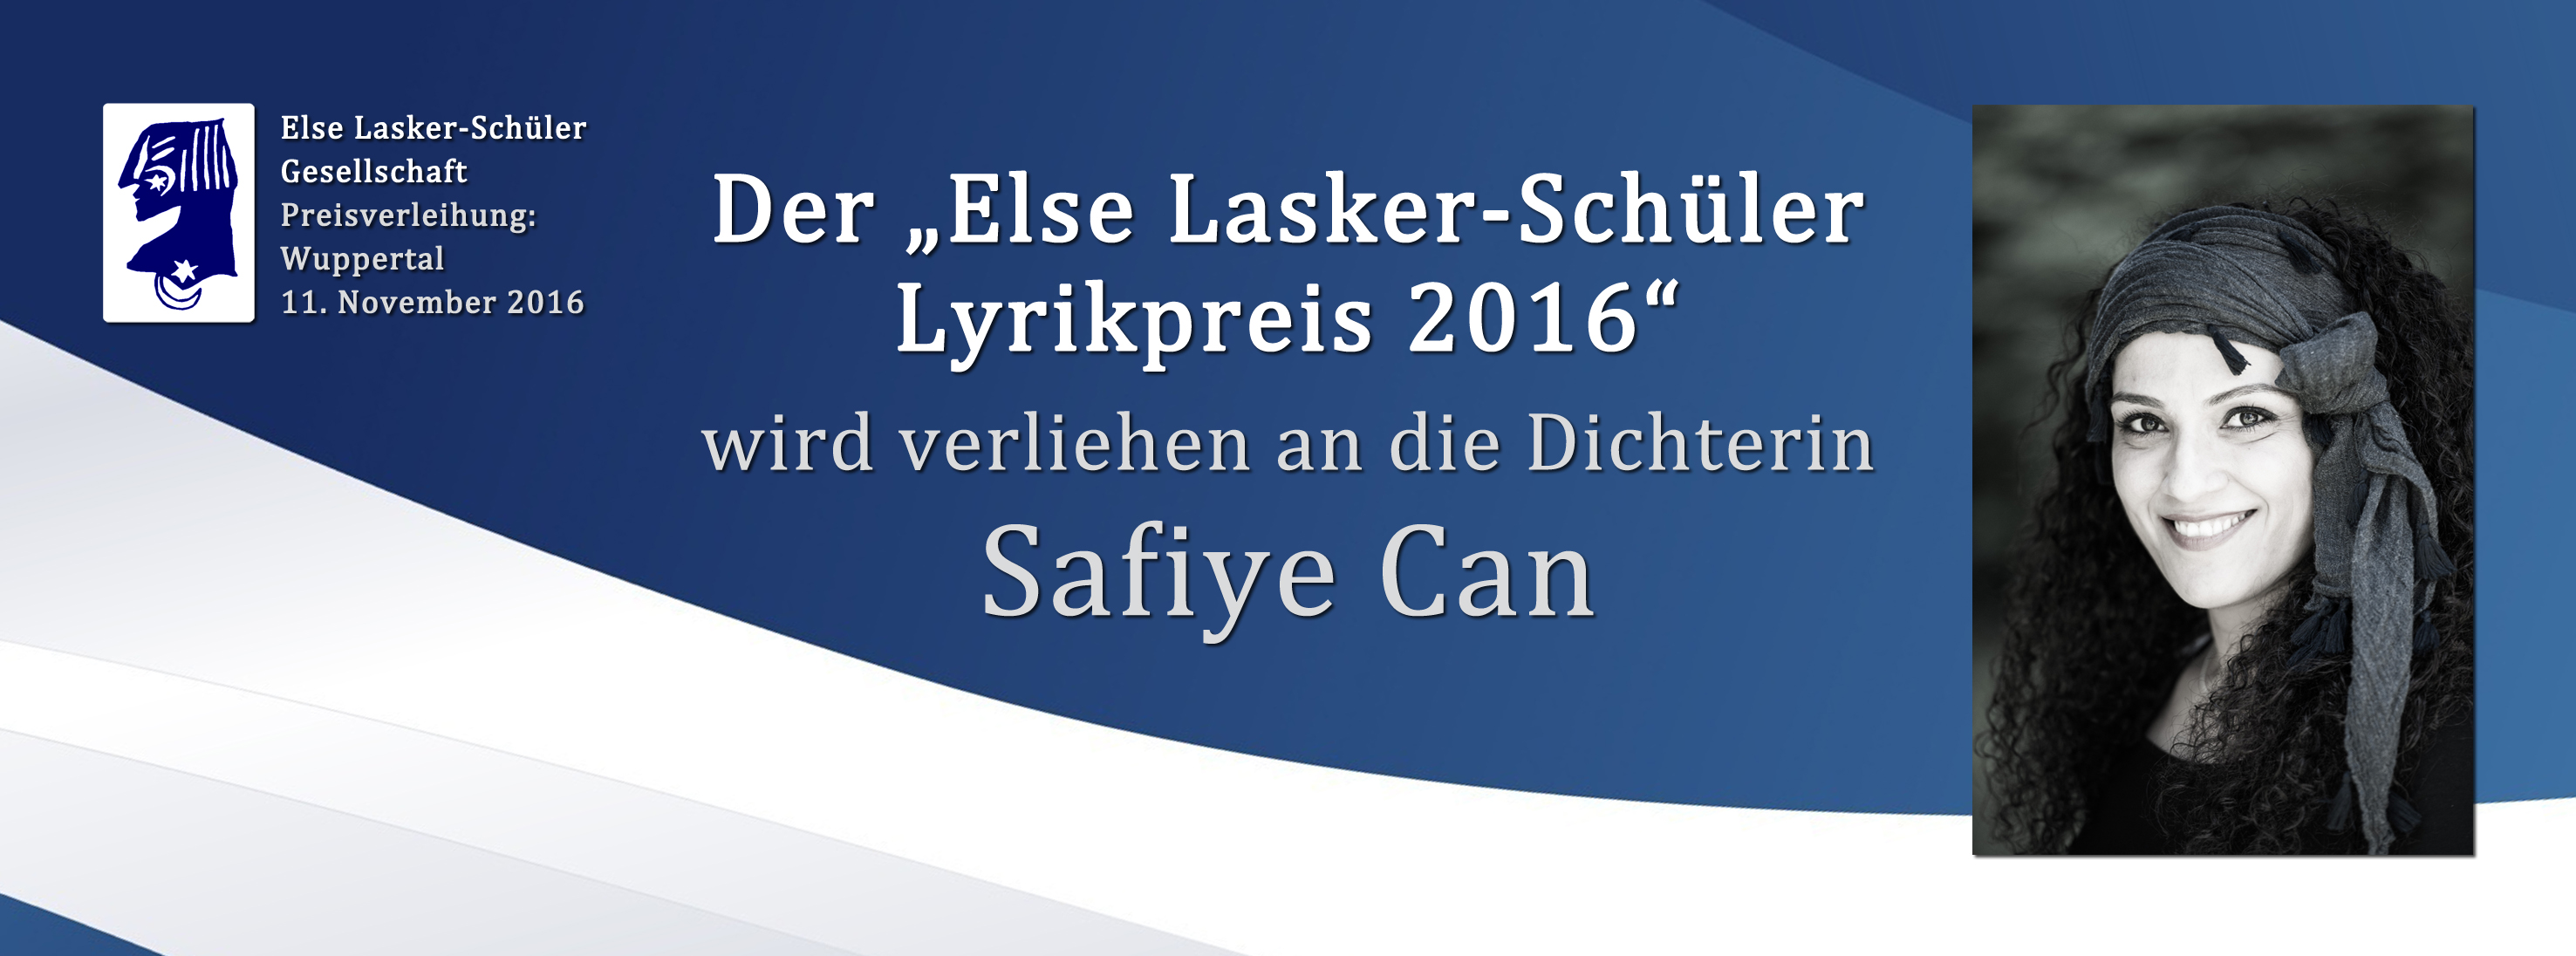 Else Lasker Schüler Lyrikpreis_Safiye Can